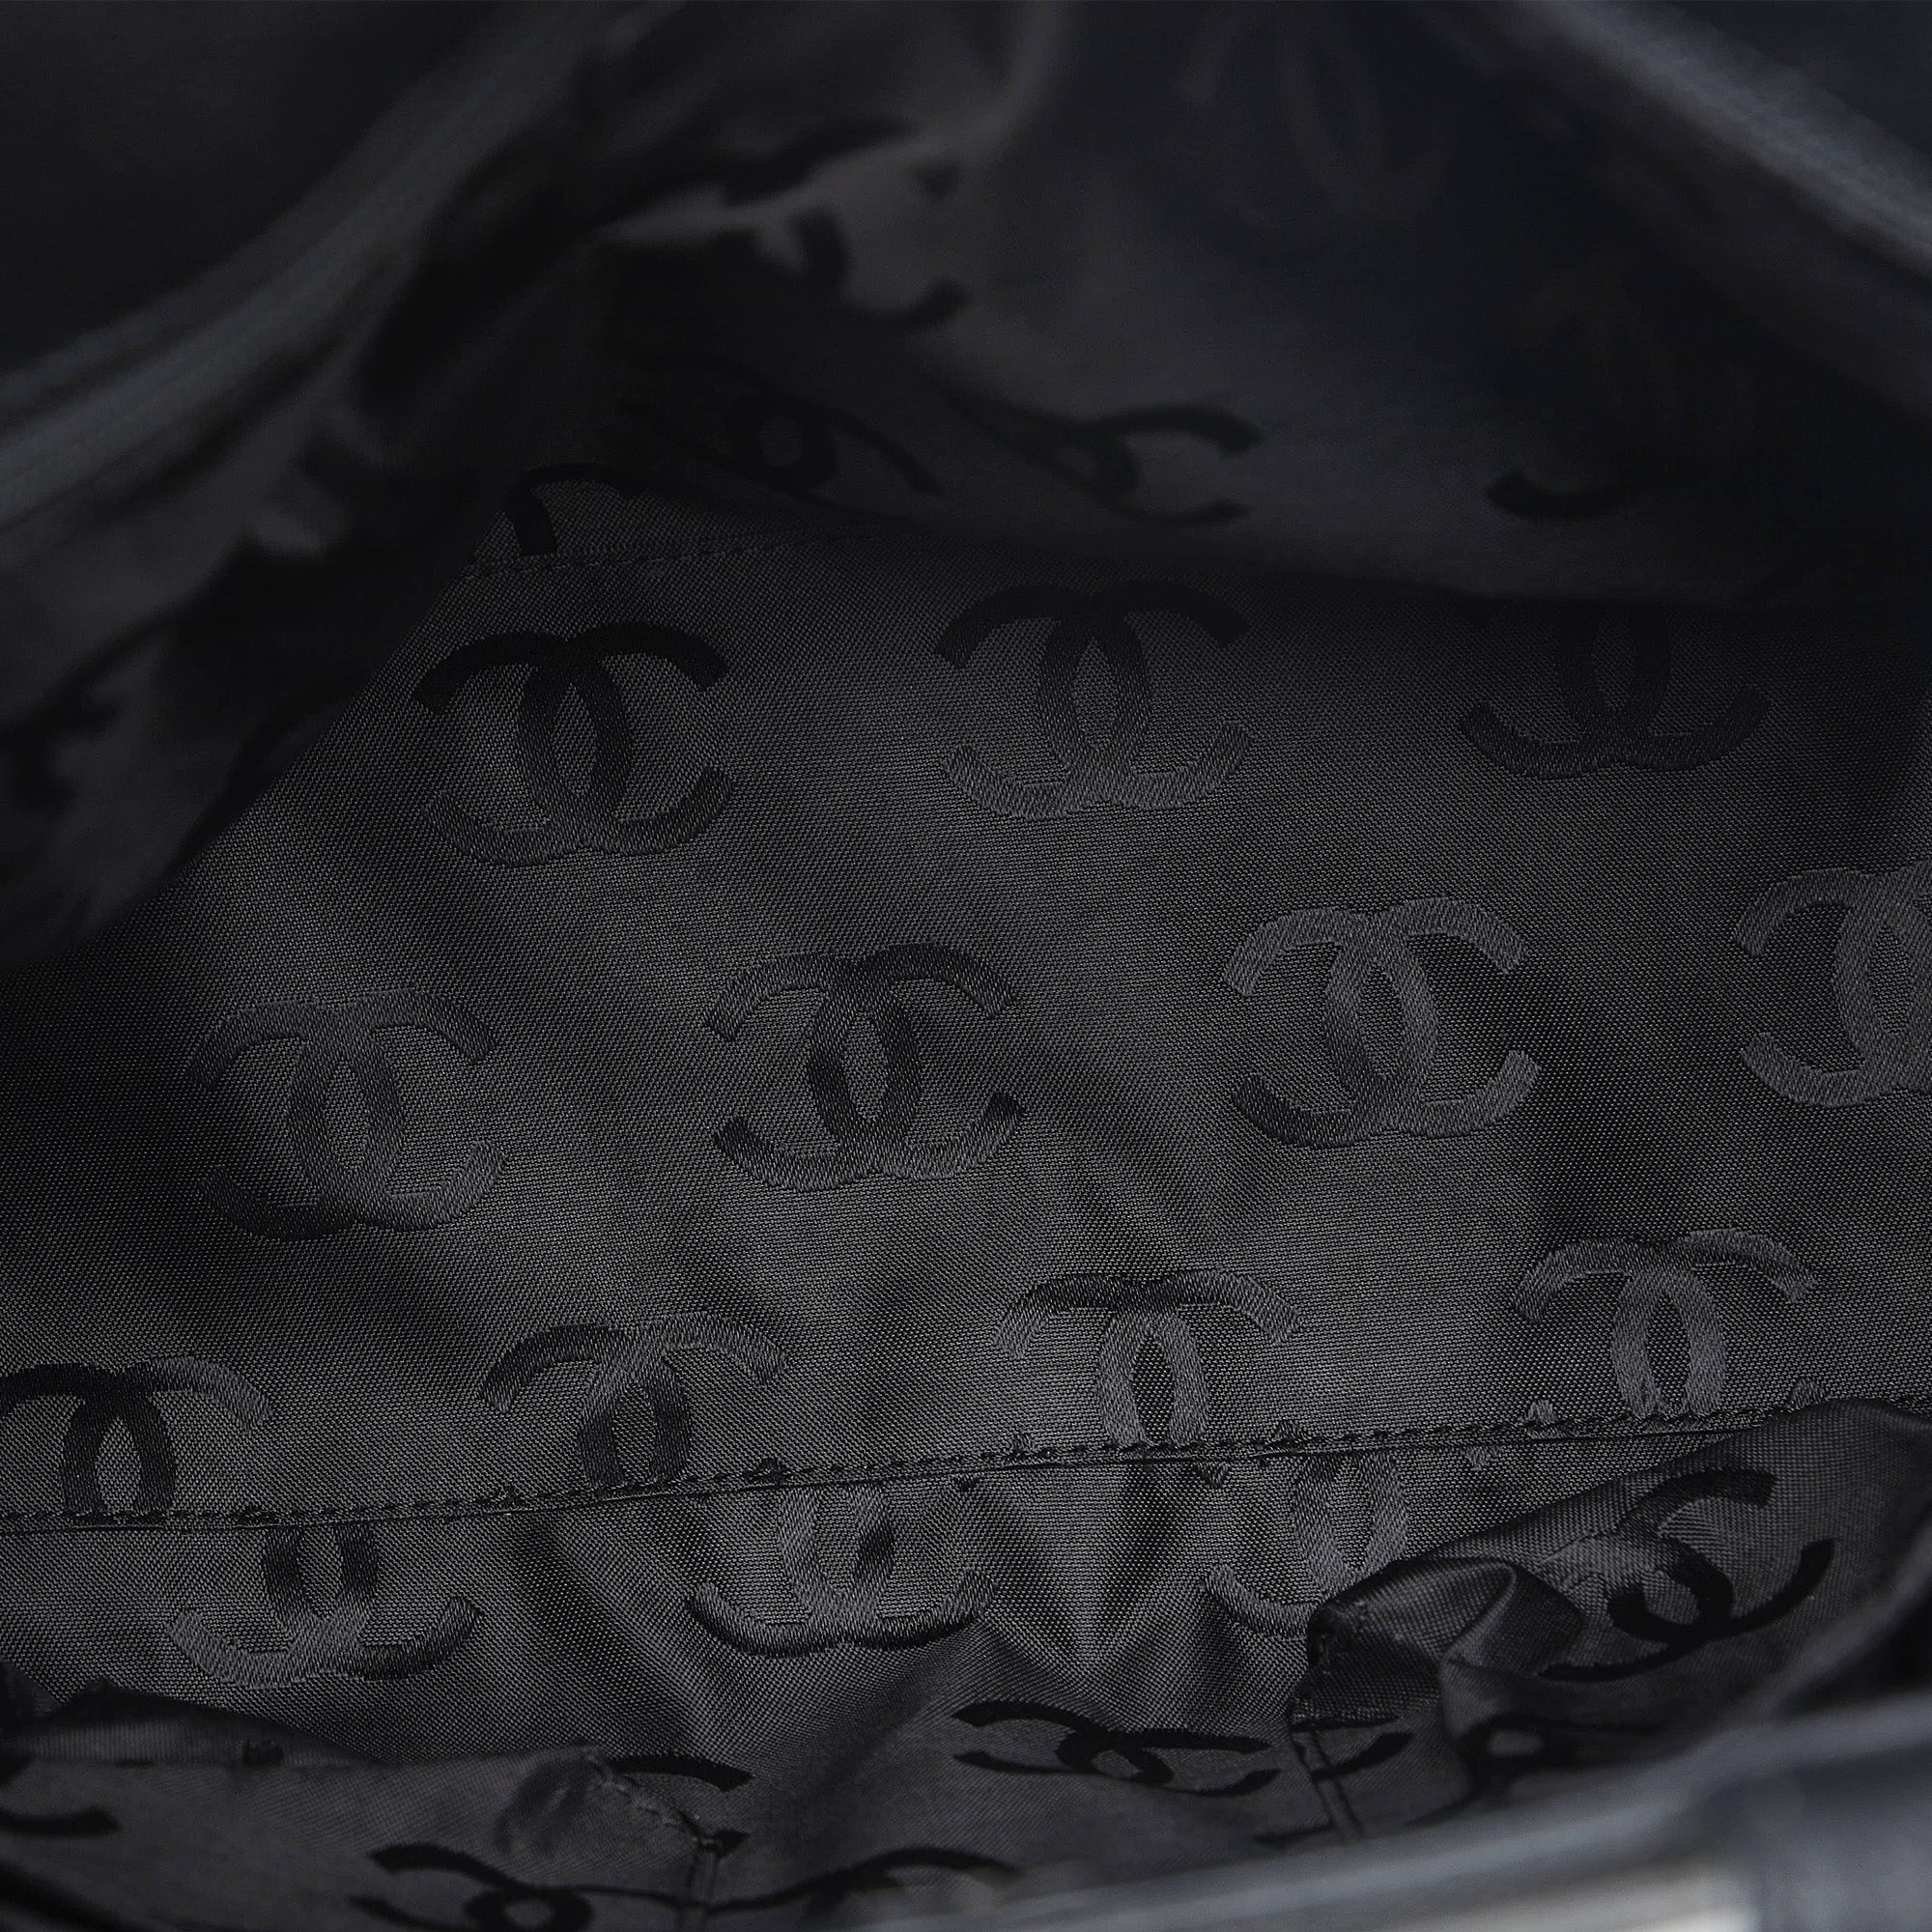 Black Chanel Caviar Leather Backpack Bag – Designer Revival